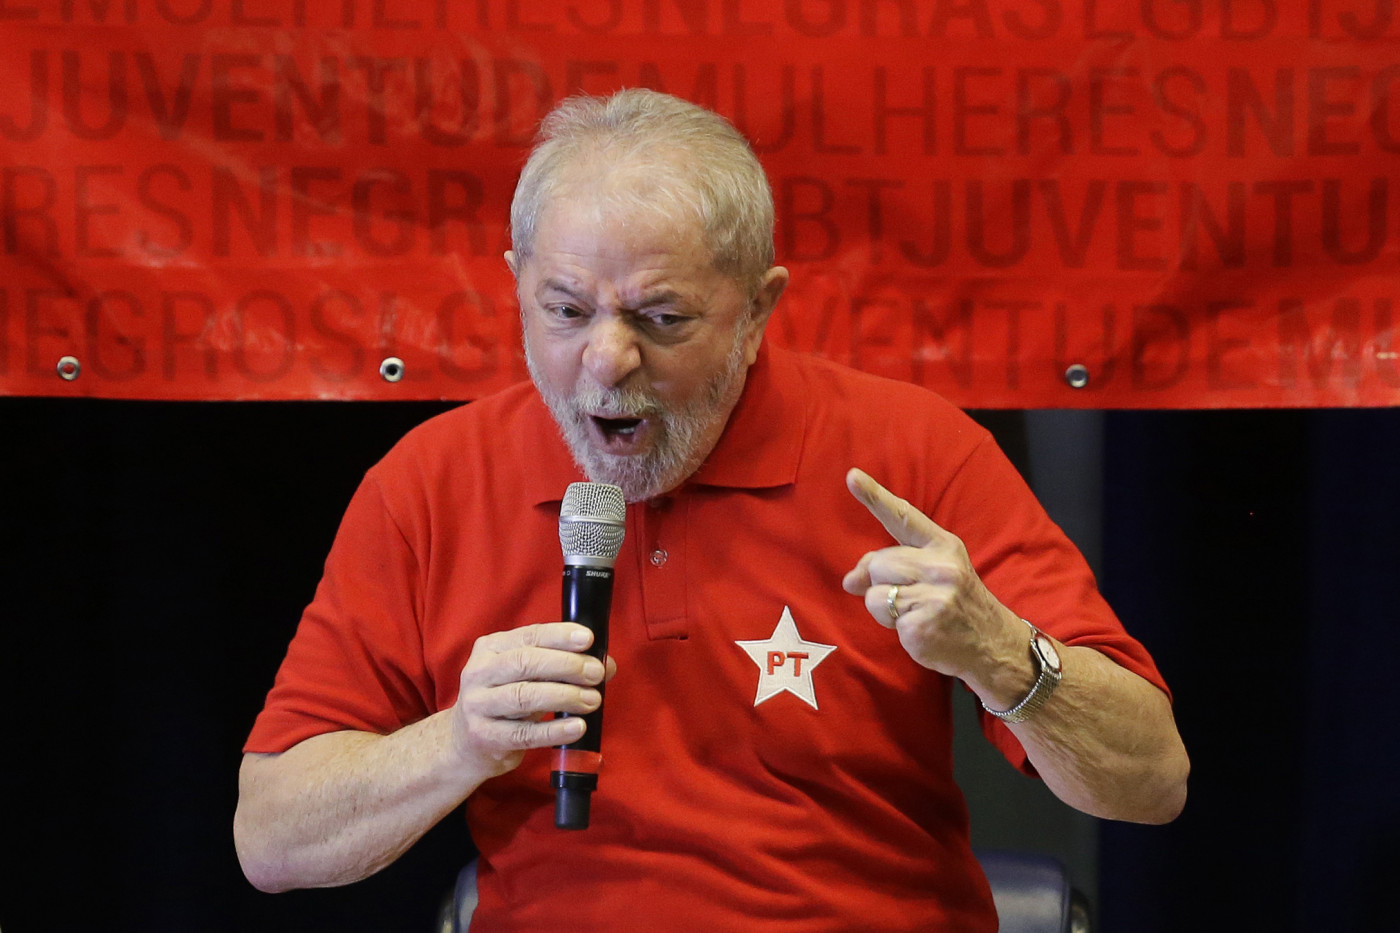 Homem de camisa vermelha com estrela do PT, cabelos grisalhos, apontando dedo e gritando